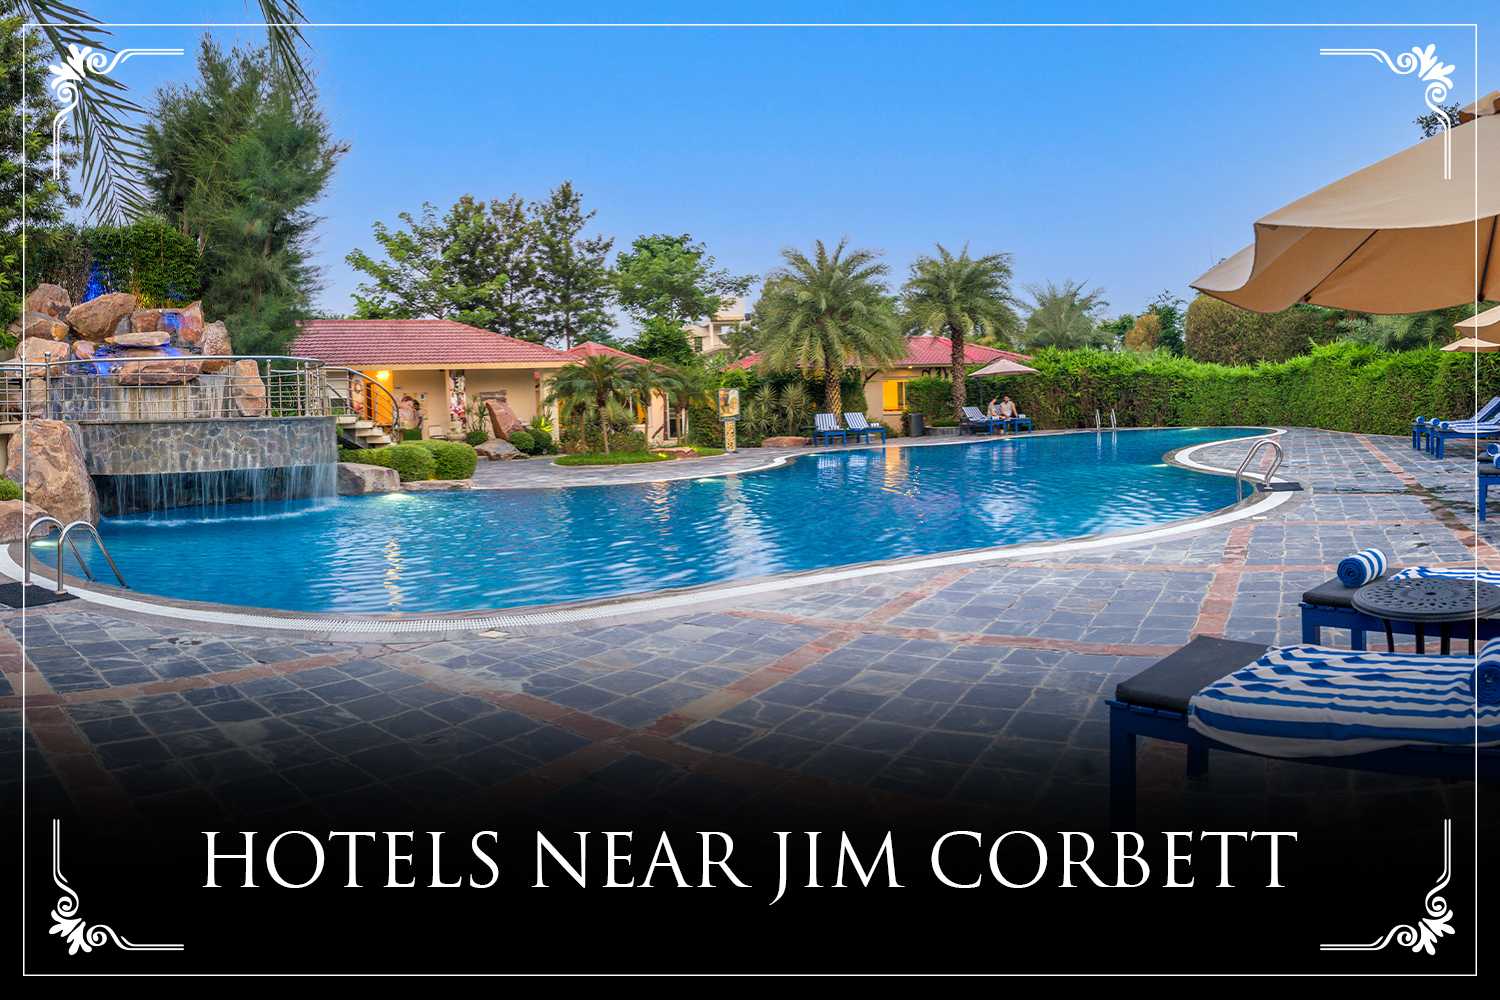 Resort De CoraçÃo - the Ultimate Choice Among Hotels Near Jim Corbett for Your Dream Wedding